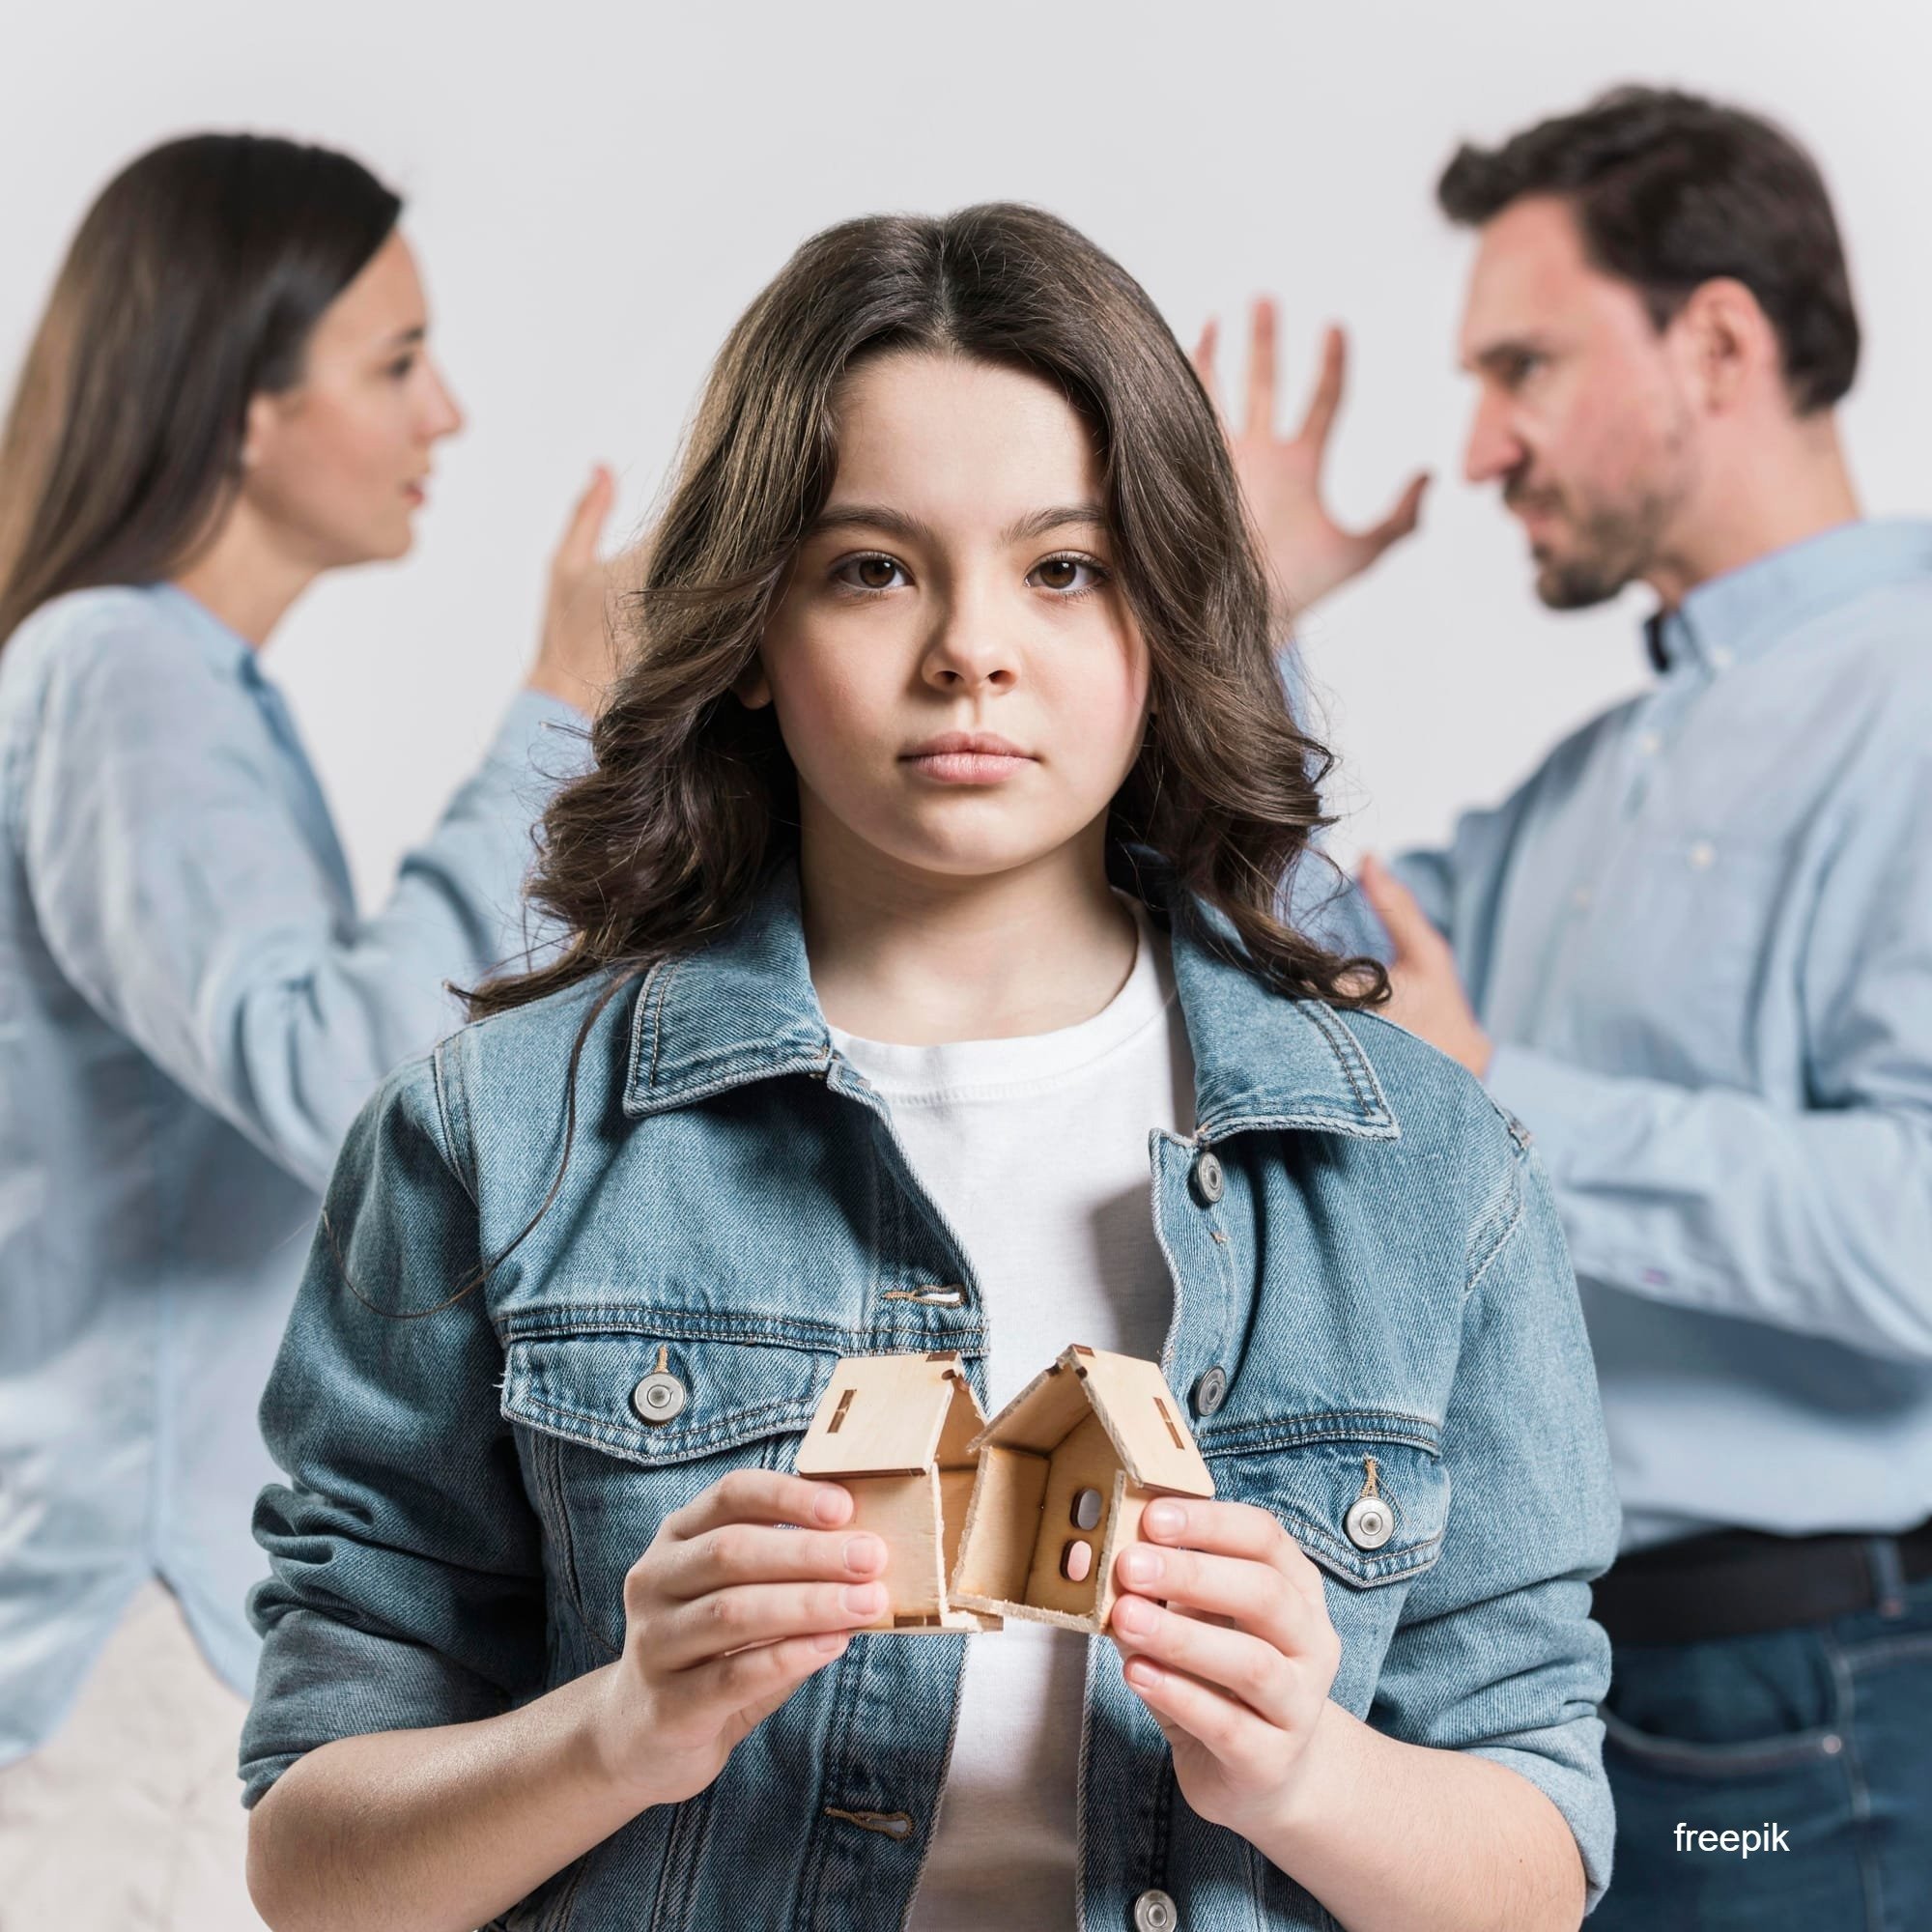 גישור לגירושין - הזוגיות נגמרת אך ההורות נמשכת